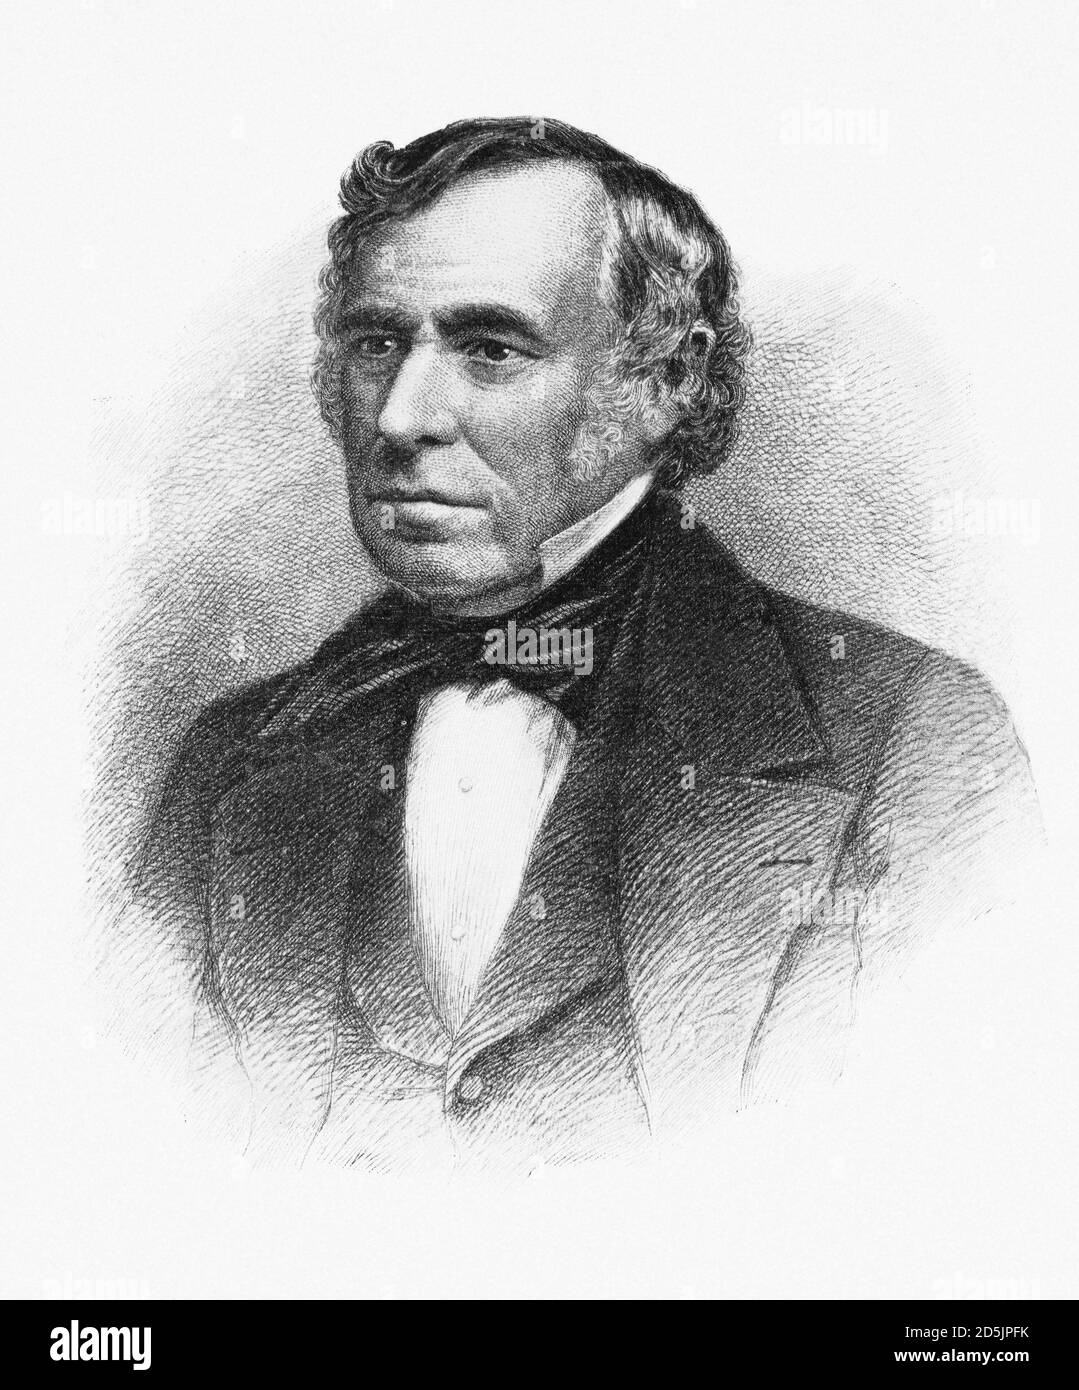 Porträt von Präsident Zachary Taylor. Zachary Taylor (1784 – 1850) war der 12. Präsident der Vereinigten Staaten, diente von März 1849 bis zu seinem Deat Stockfoto